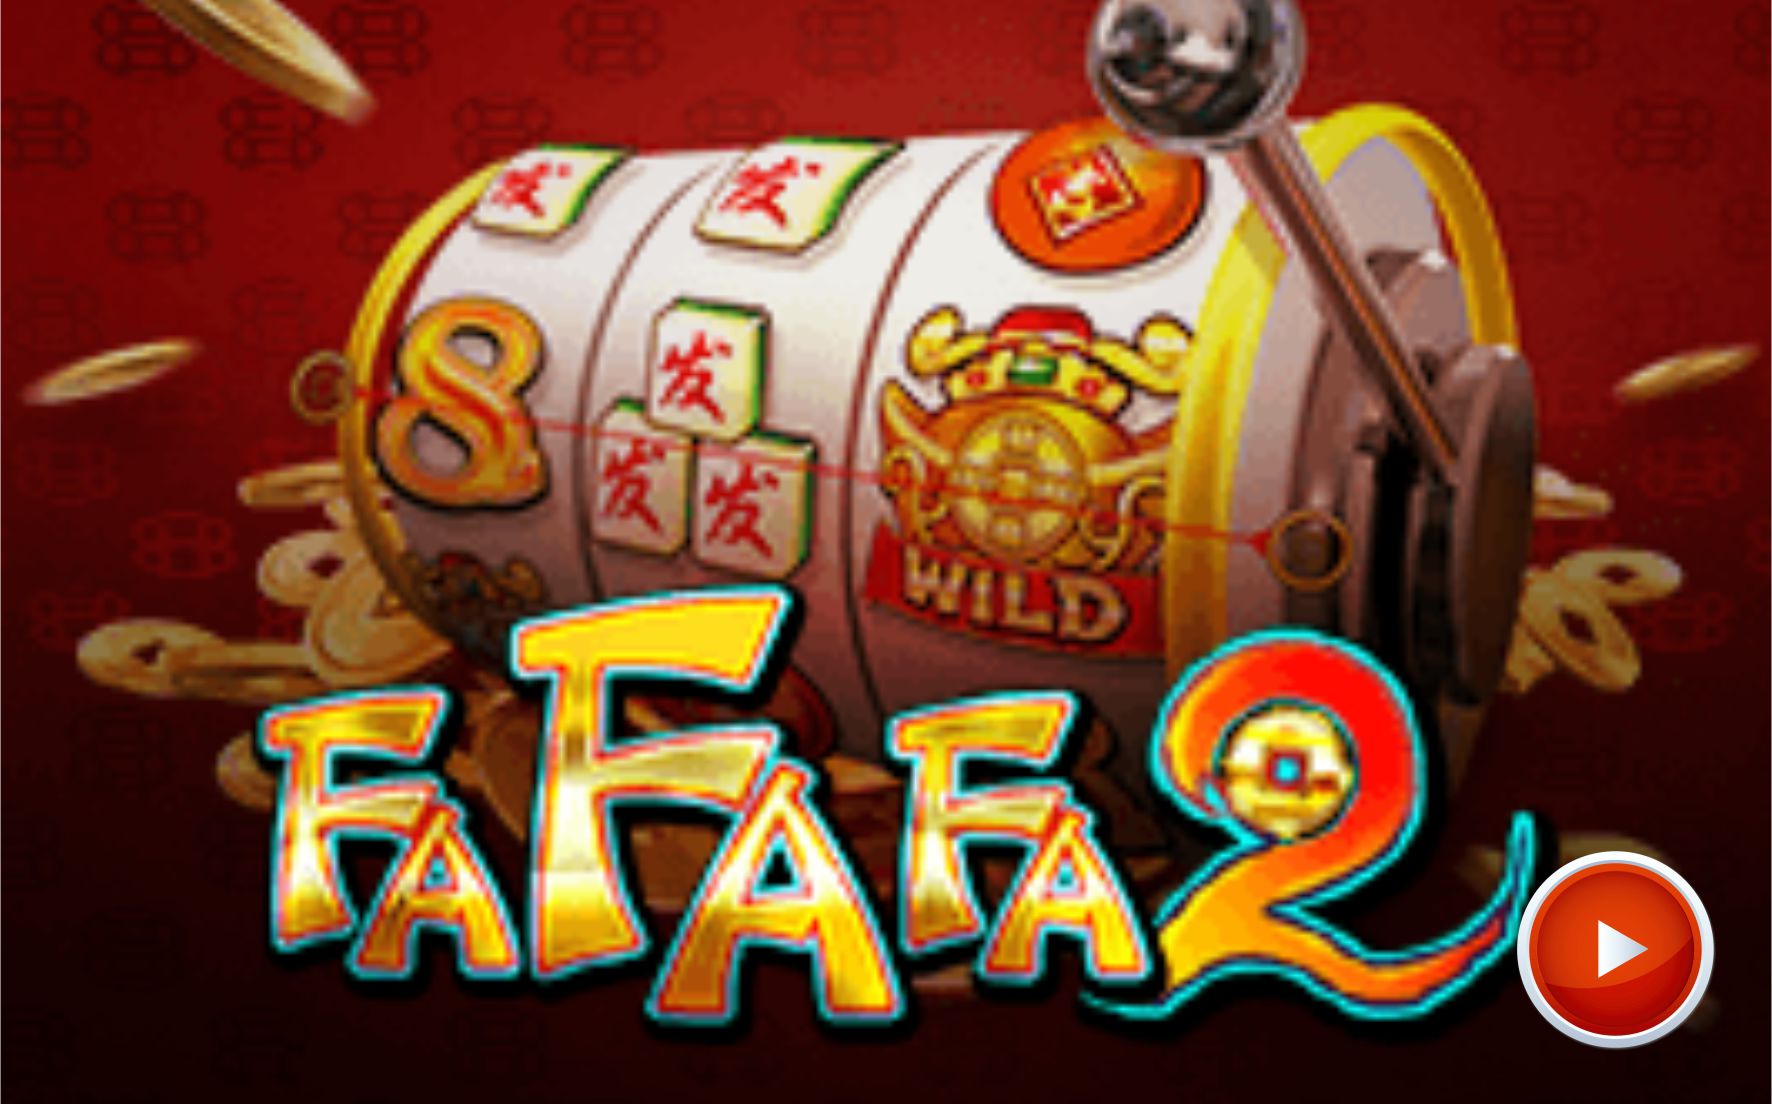 วันนี้ PAY69 เว็บออนไลน์สล็อตได้เชิญยูทูปเบอร์ THE SUCCESS มาเล่นเกม Fafafa2 ของค่าย SGสล็อต 11